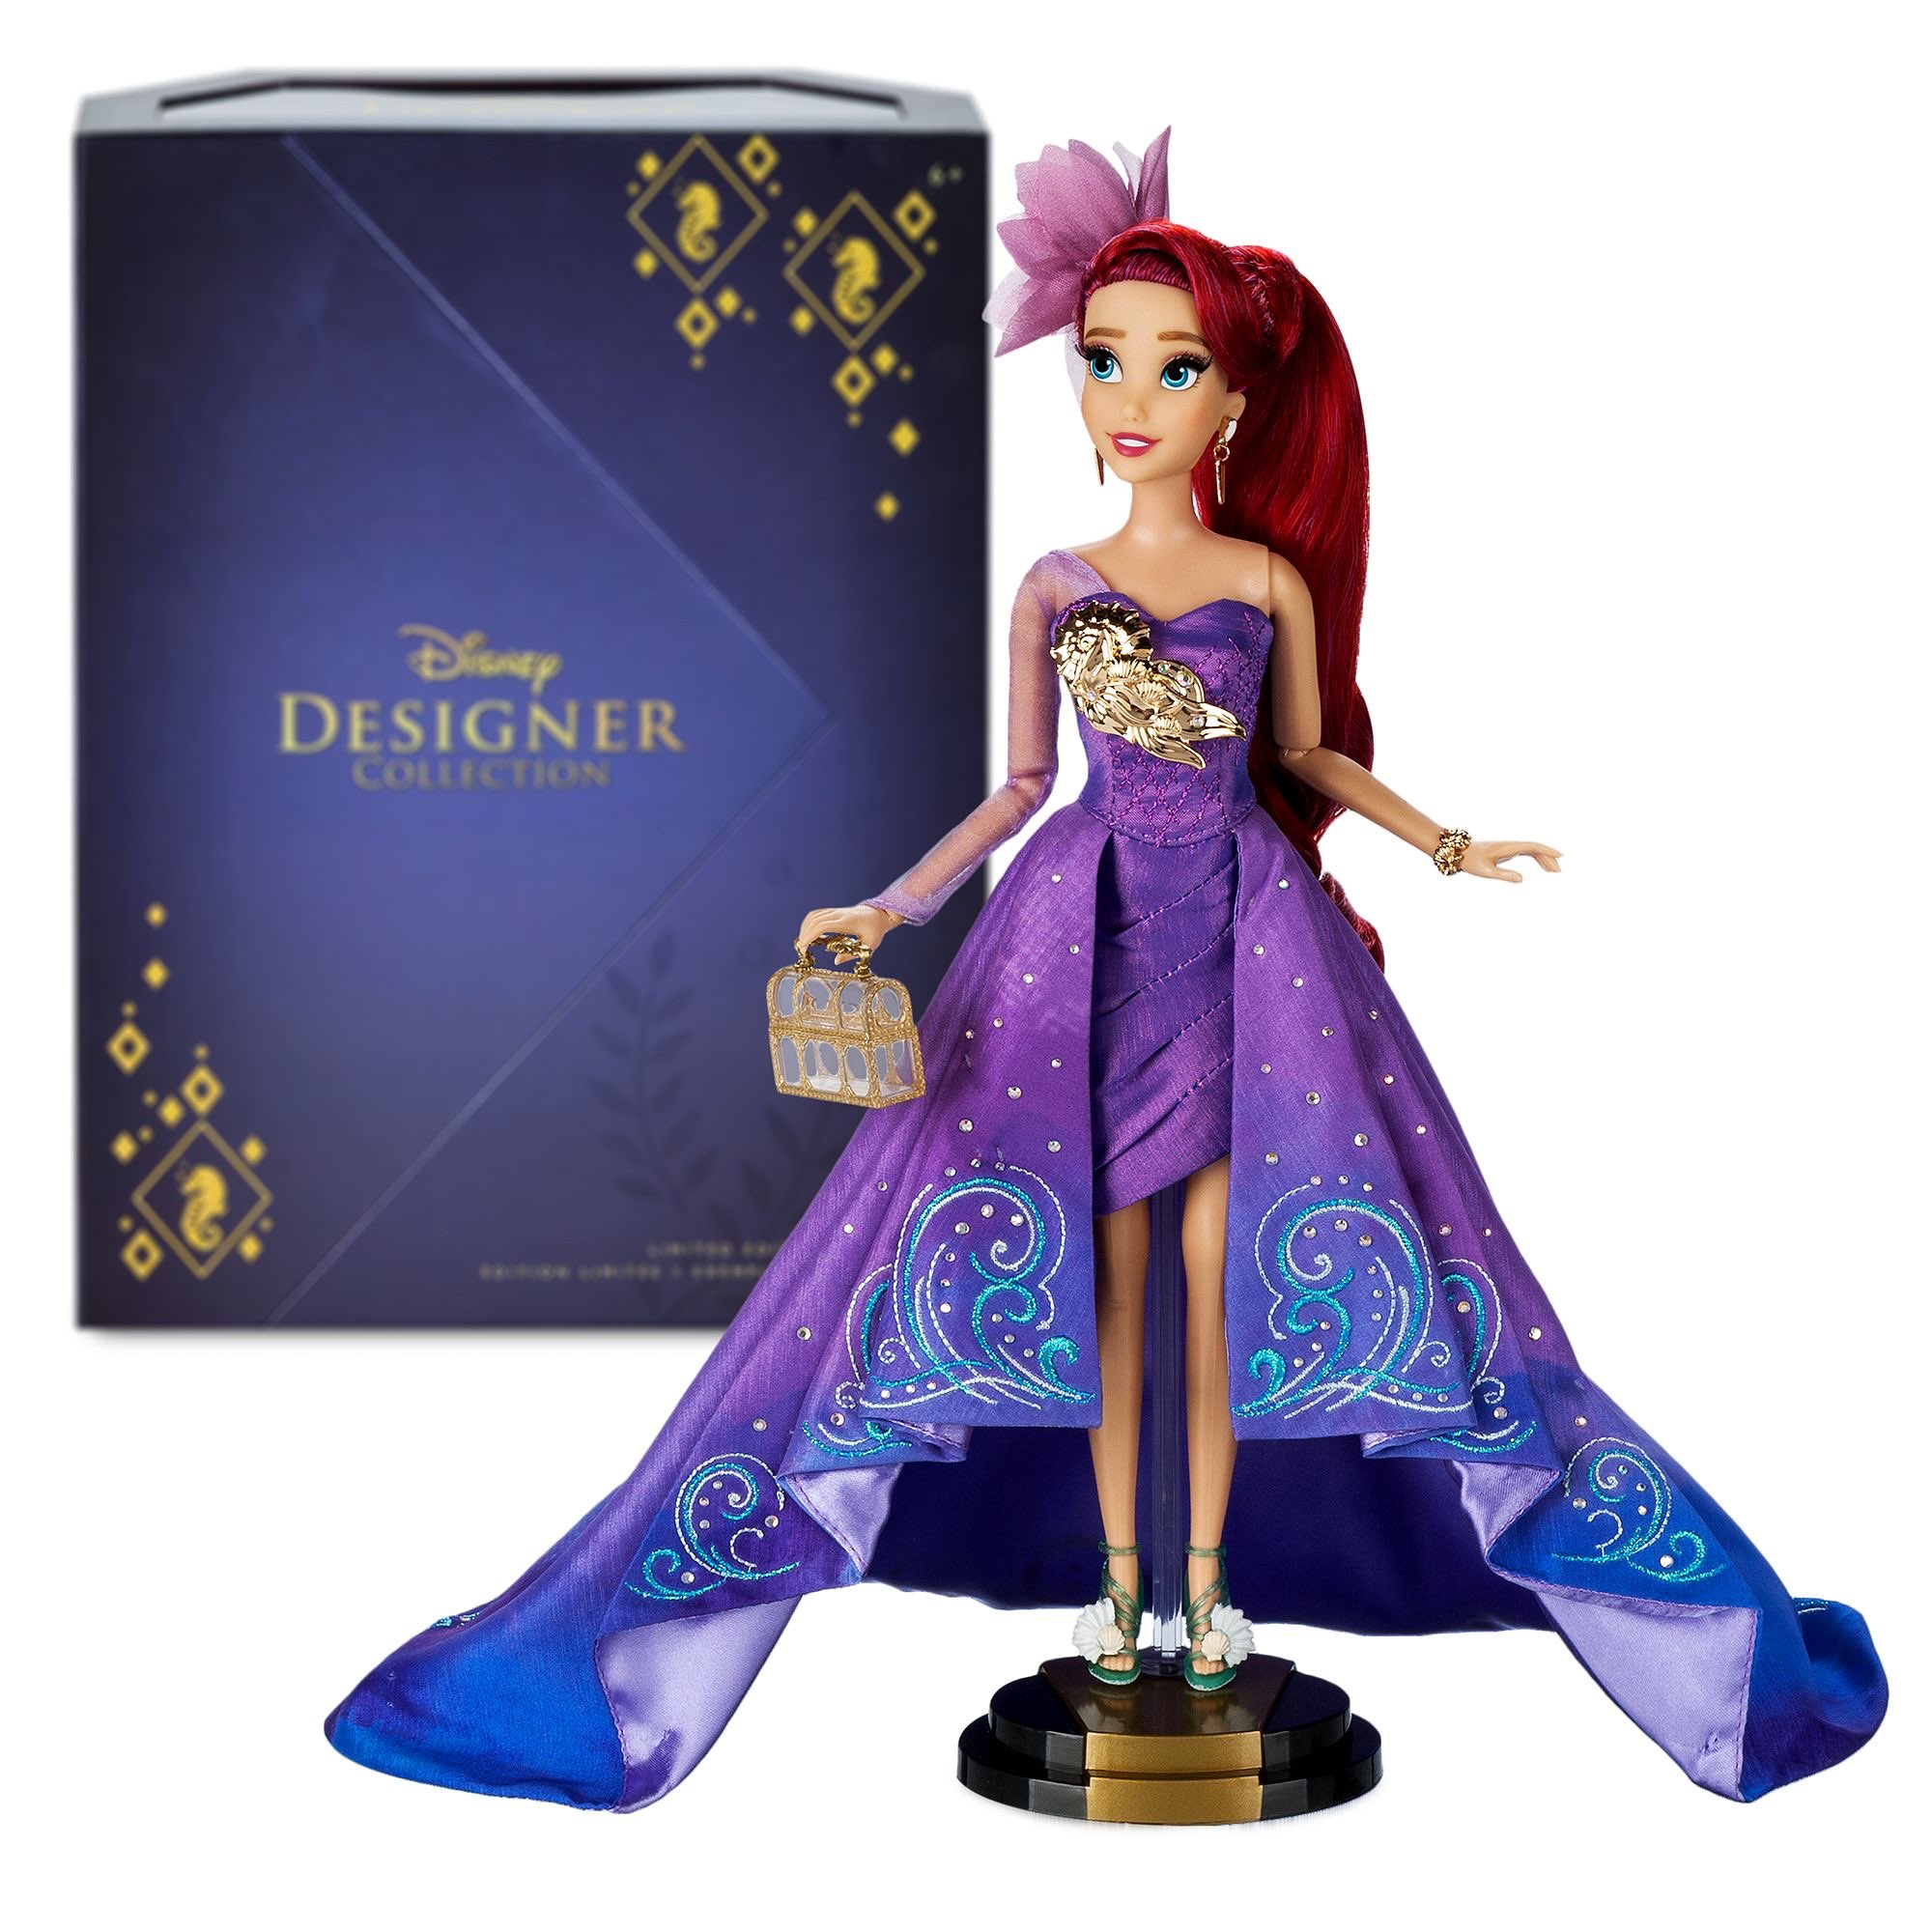 Disney Designer Collection Merida Doll Arrives on shopDisney